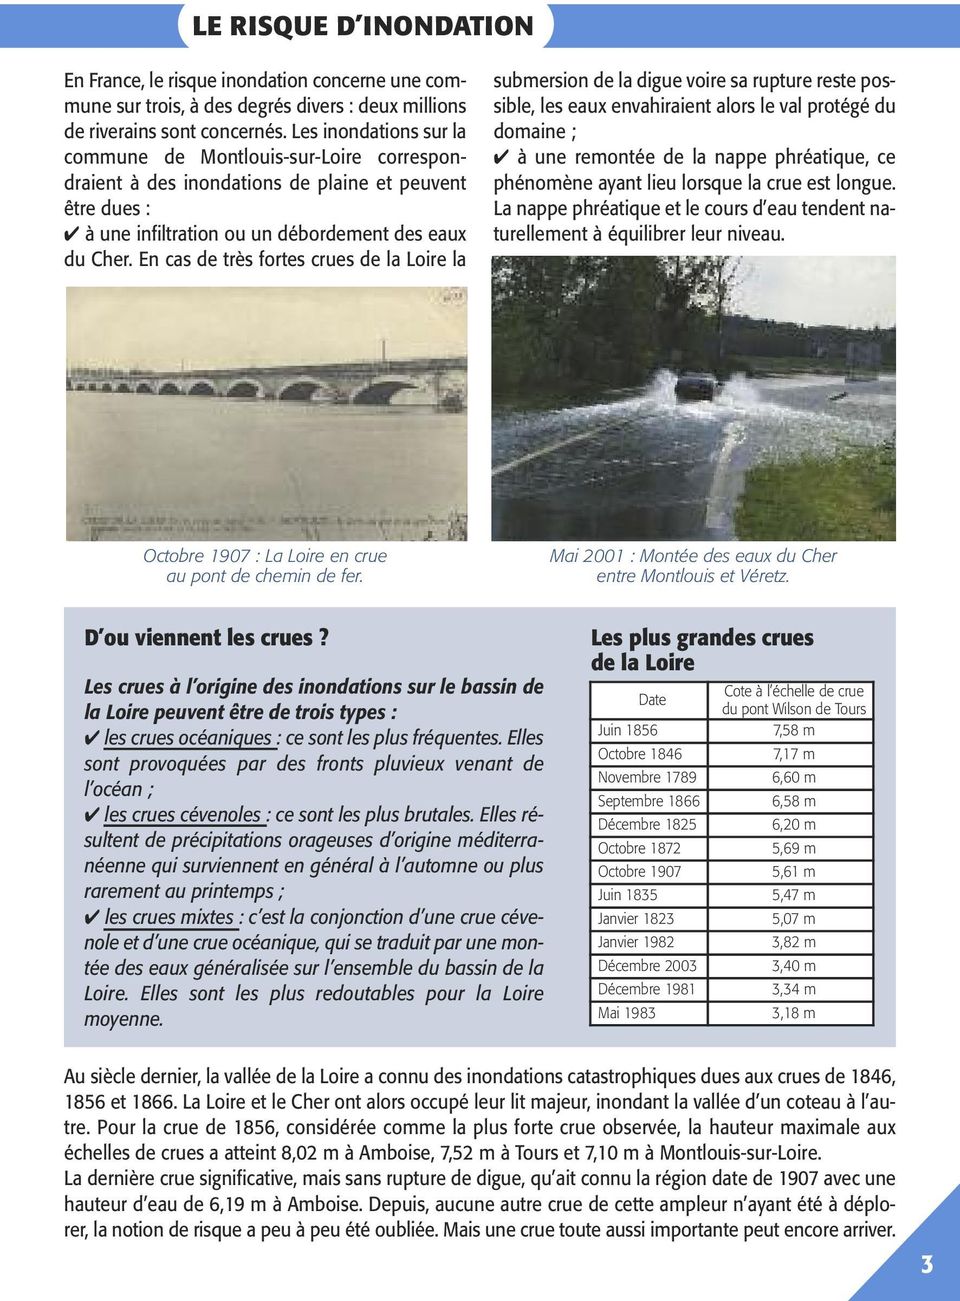 En cas de très fortes crues de la Loire la submersion de la digue voire sa rupture reste possible, les eaux envahiraient alors le val protégé du domaine ; à une remontée de la nappe phréatique, ce